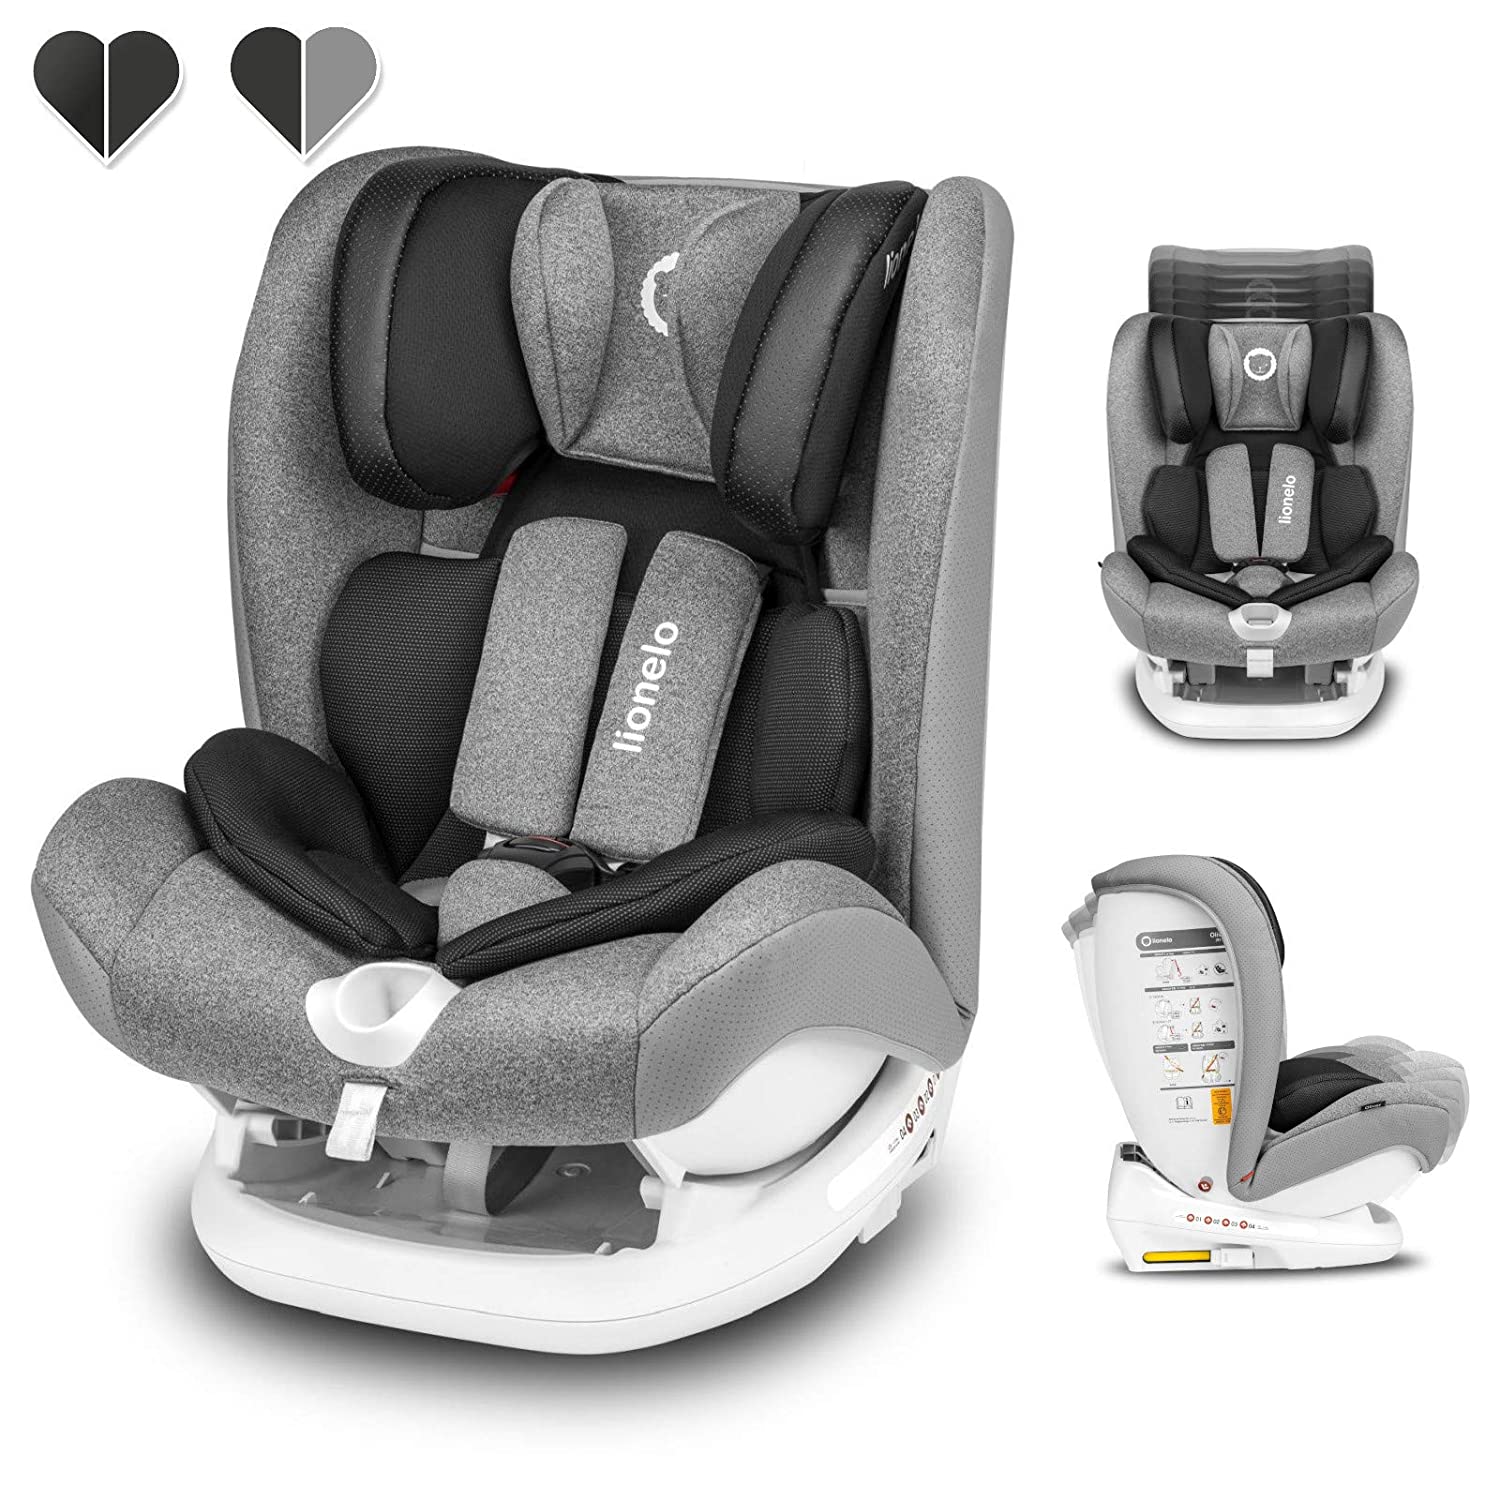 Lionelo Oliver Isofix Top Tether Child Seat 9-36 kg Side Protection 5-Point Belt Backrest Adjustment Headrest Reduction Insert ECE R44 04 (Black)